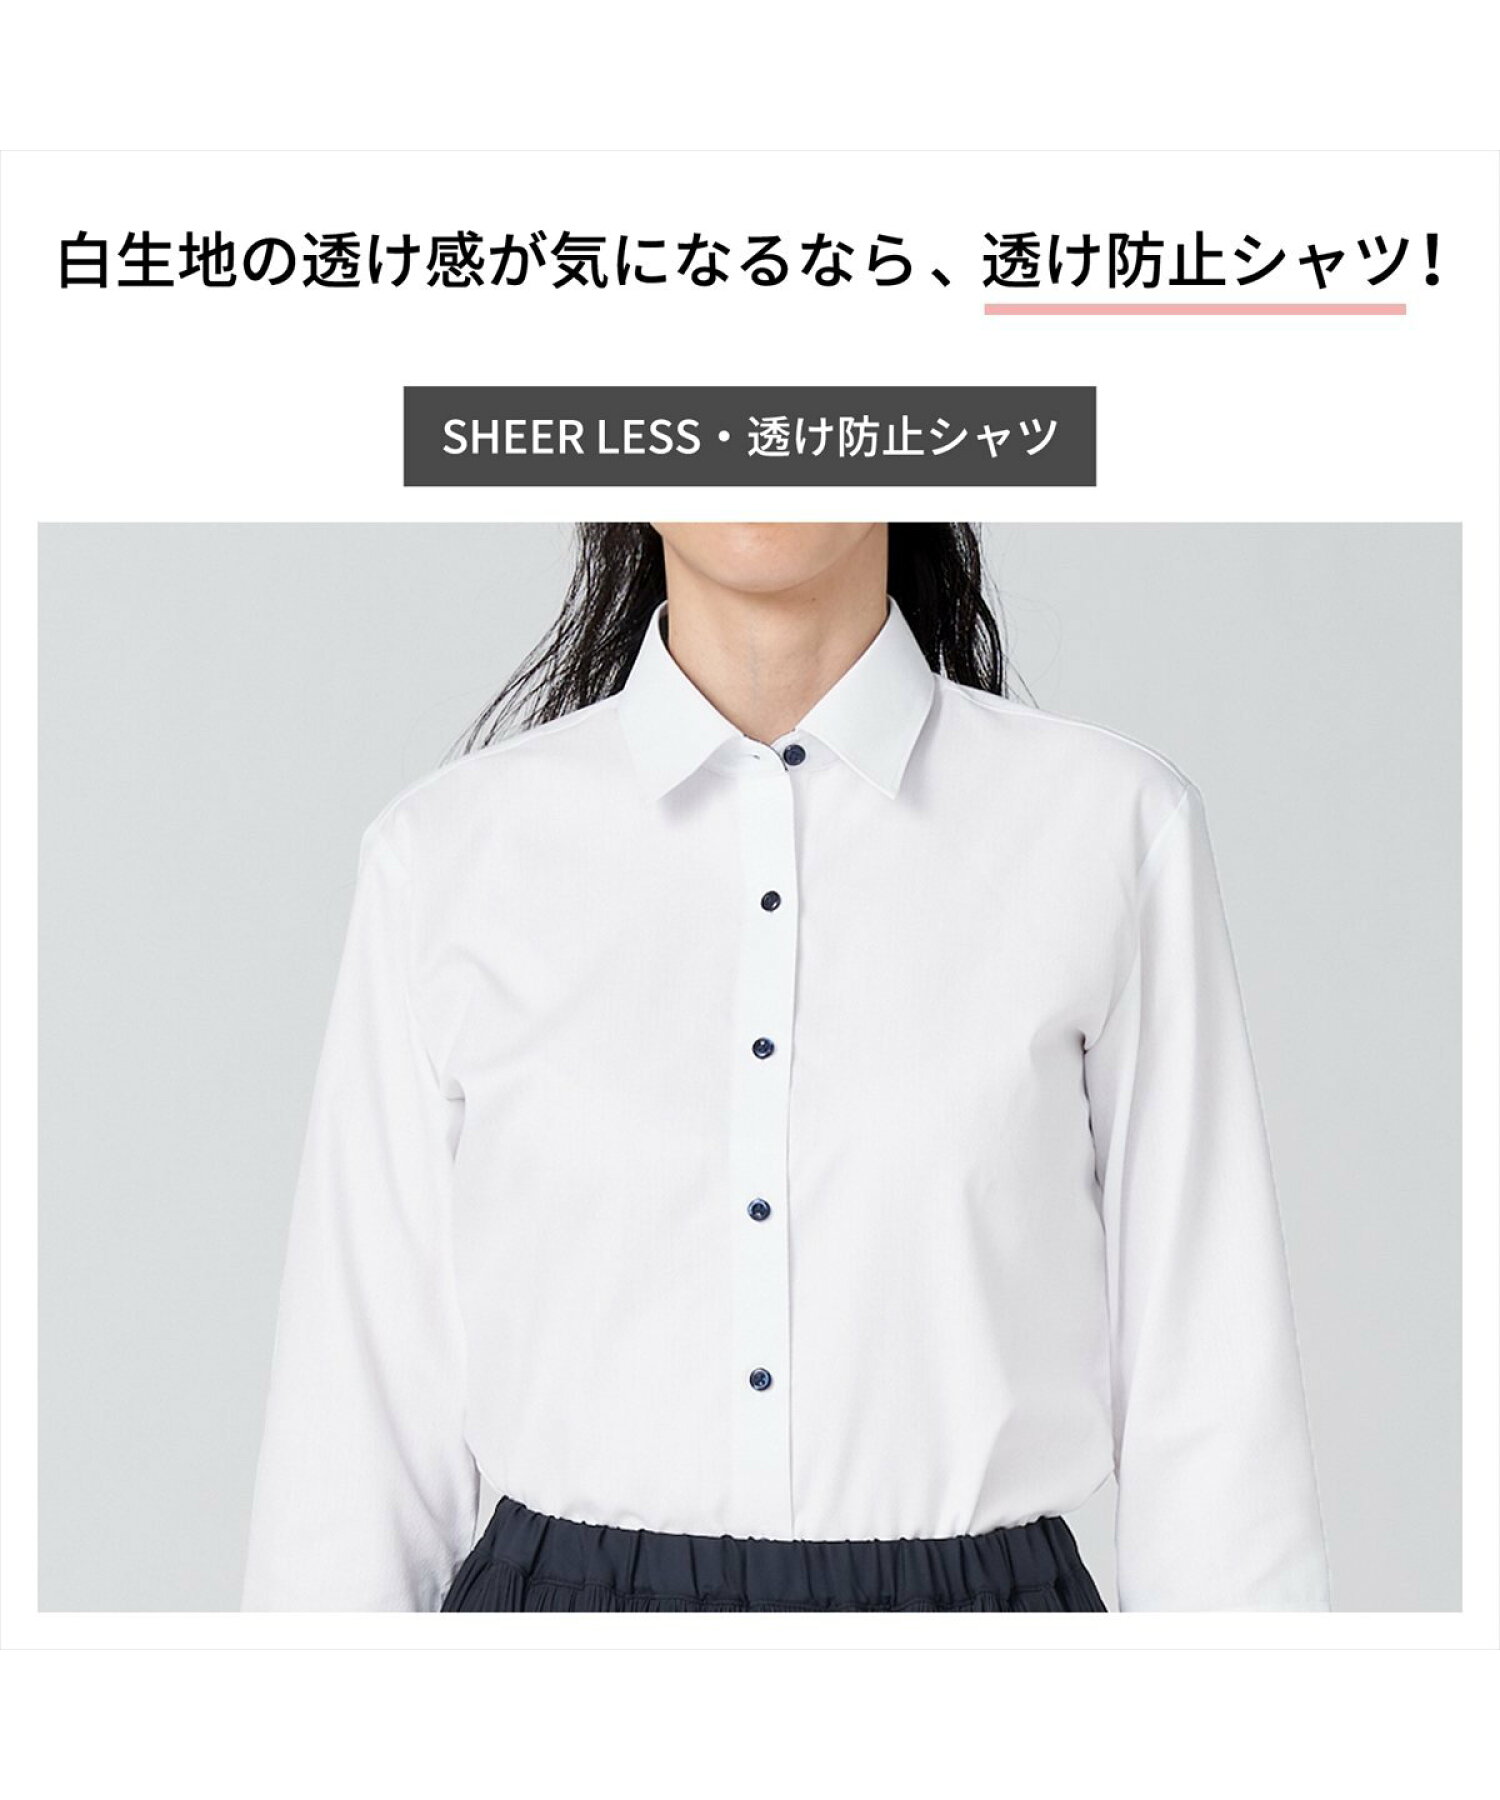 【透け防止】 形態安定 スキッパーカラー 長袖レディースシャツ